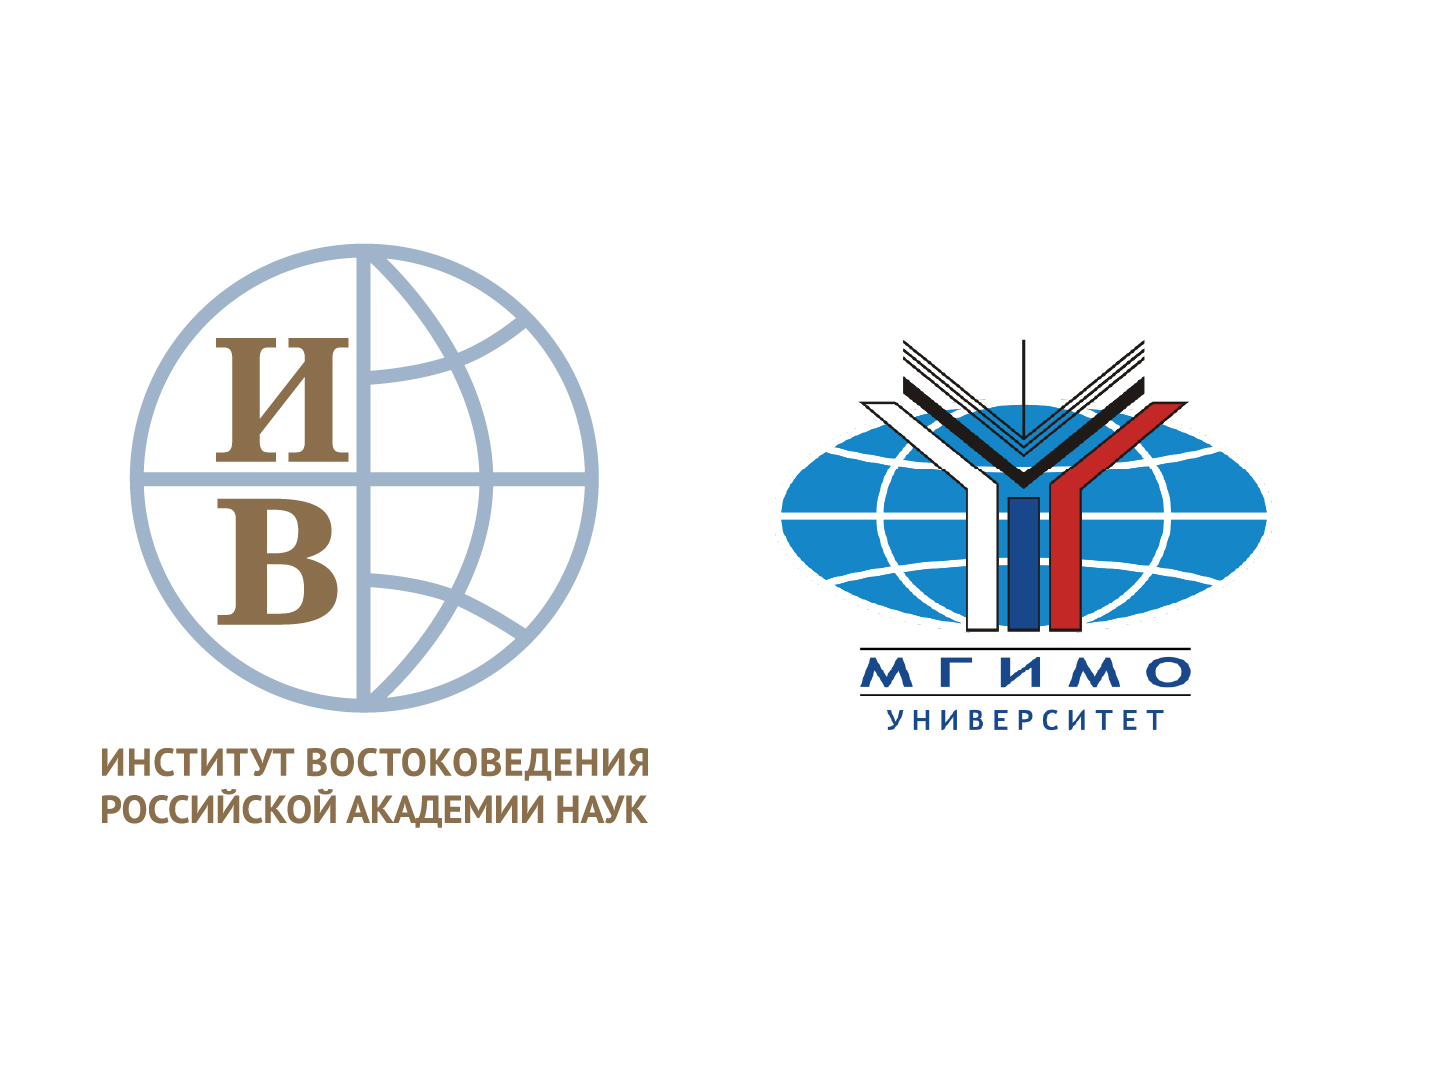 Соглашение о консорциуме между ИВ РАН и МГИМО